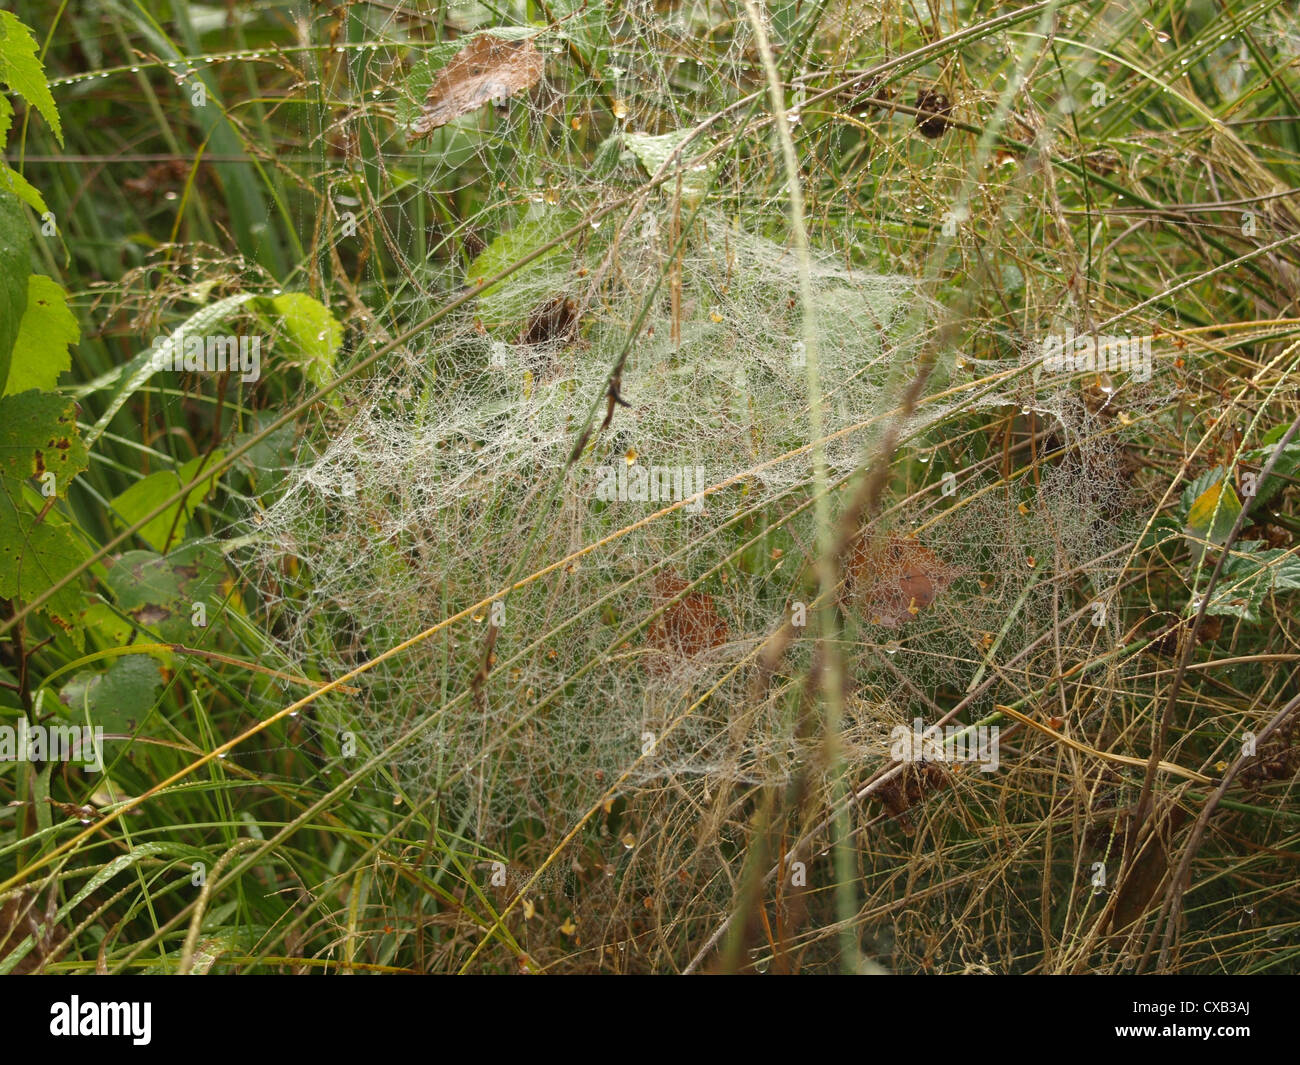 spiderweb with water drops between plants / Spinnennetz mit Wassertropfen zwischen Pflanzen Stock Photo